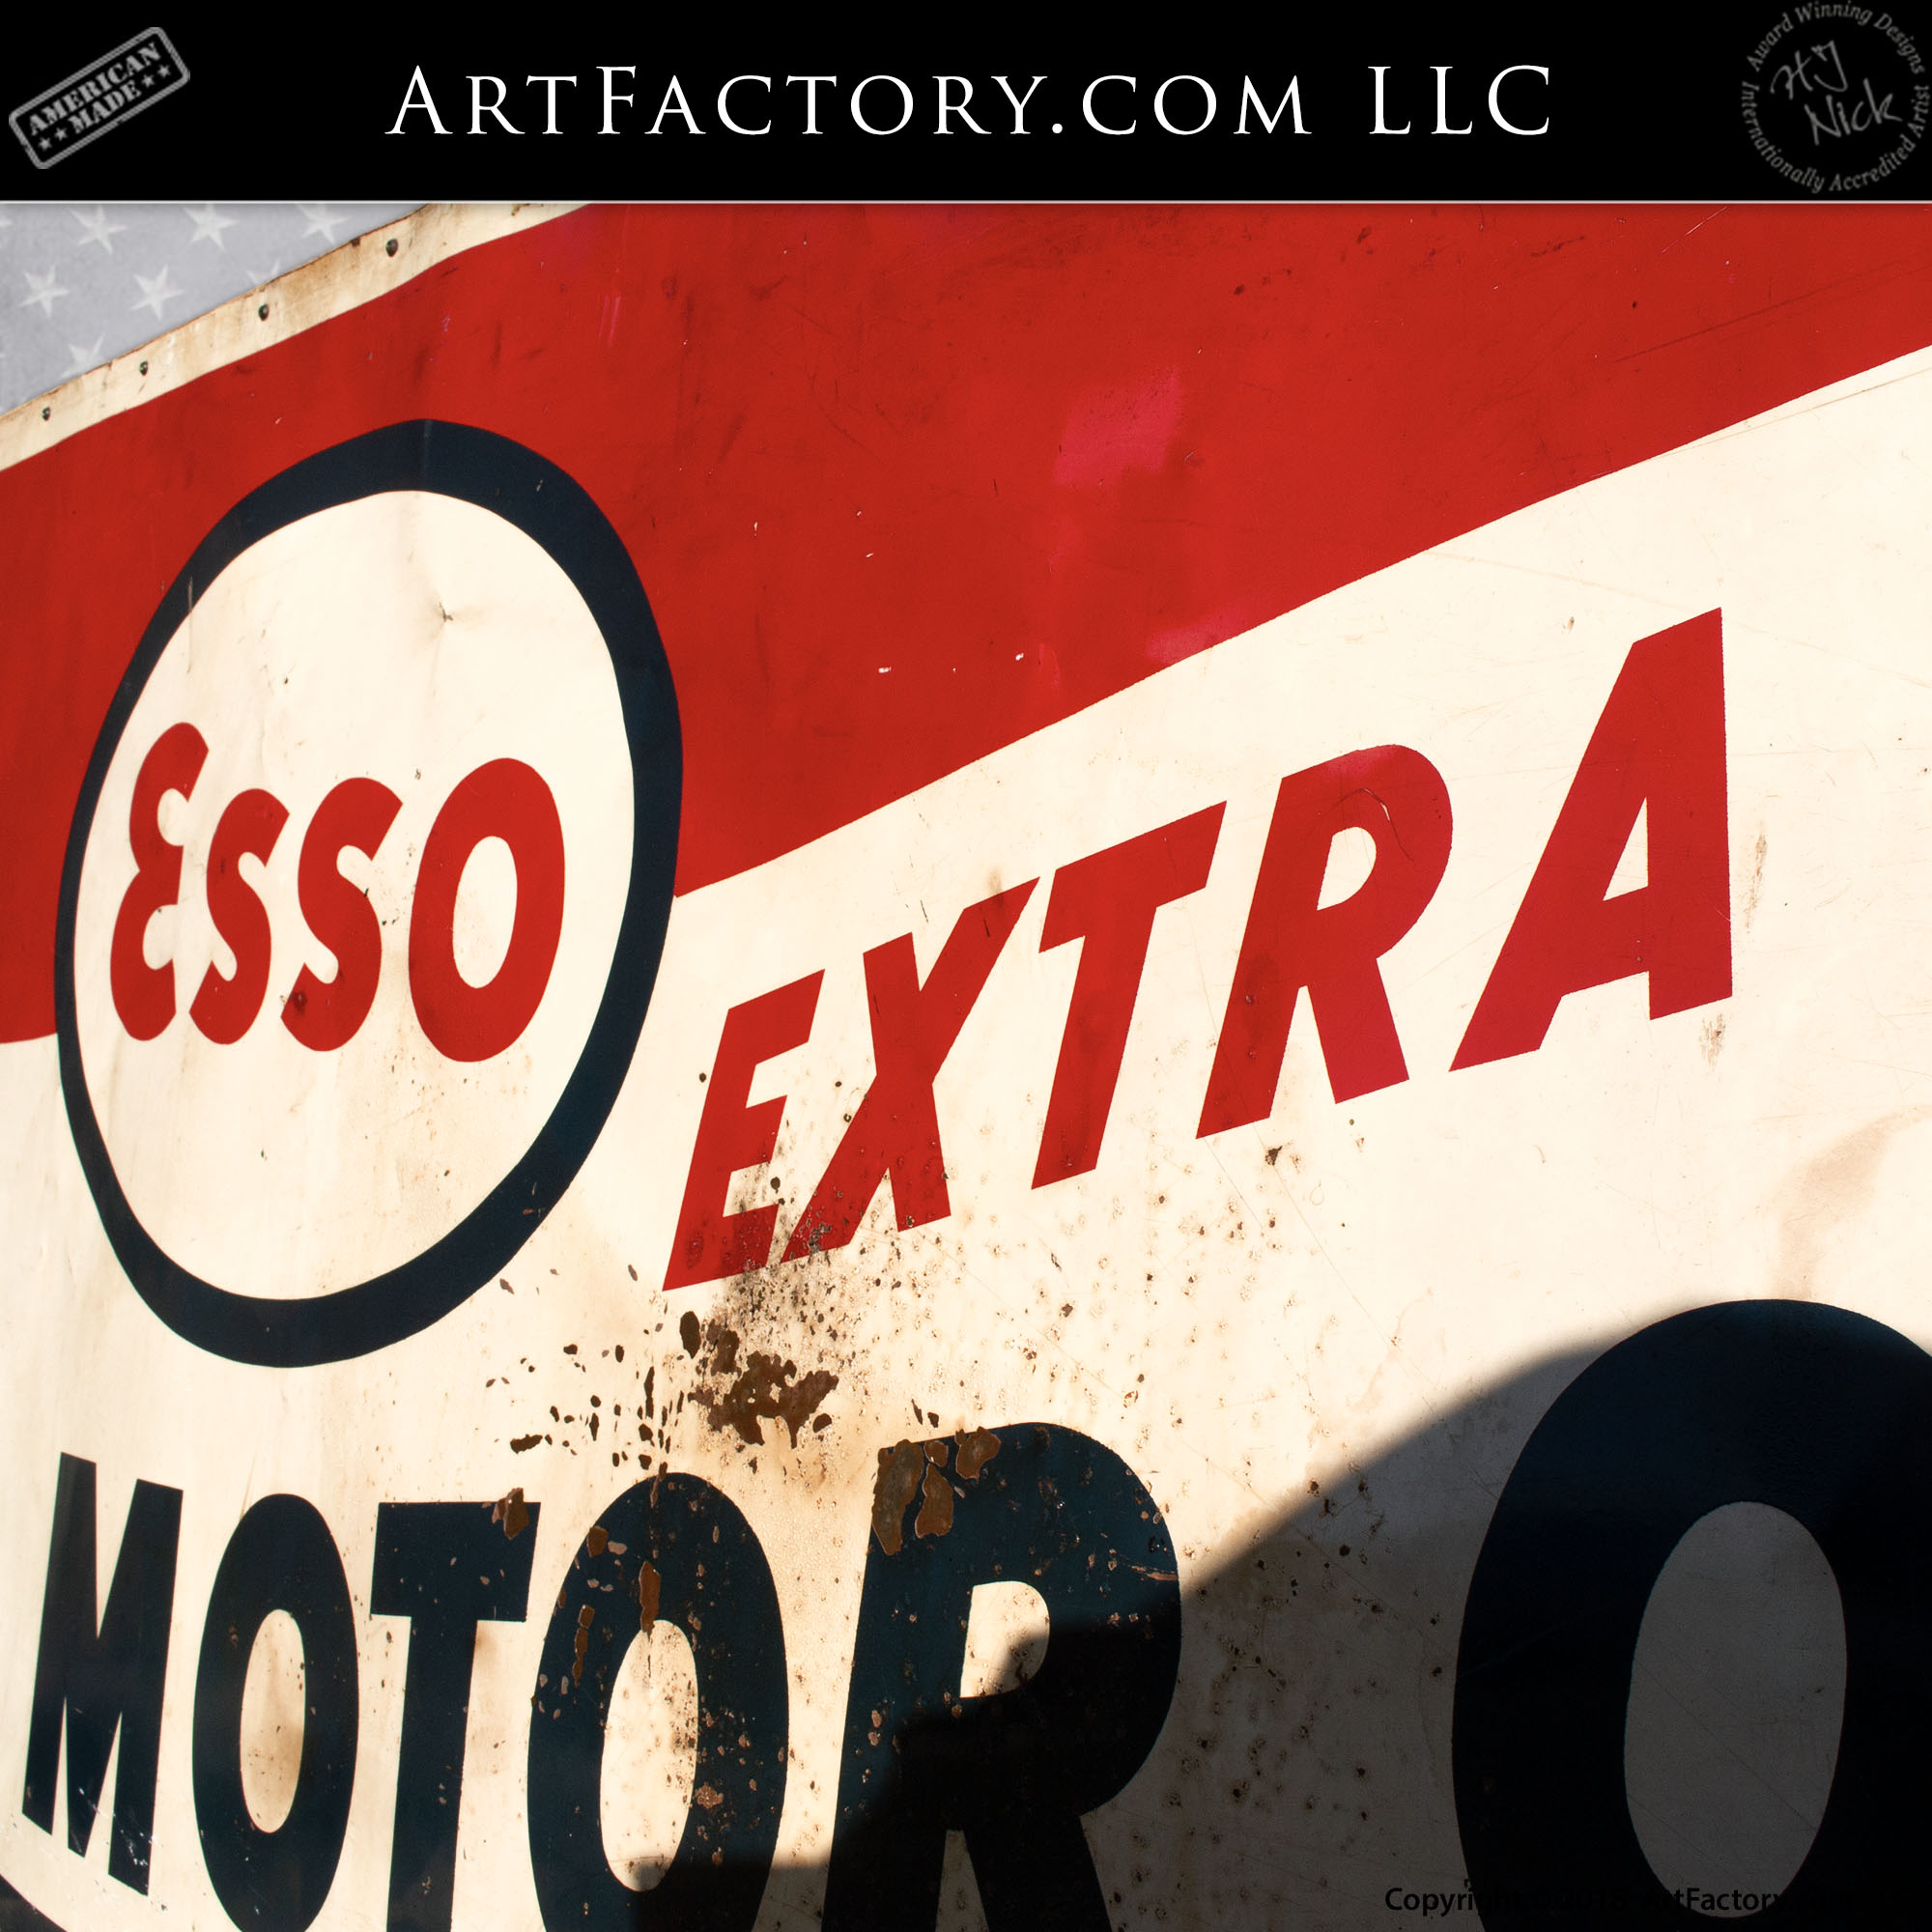 Esso Extra Motor Oil Vintage Sign